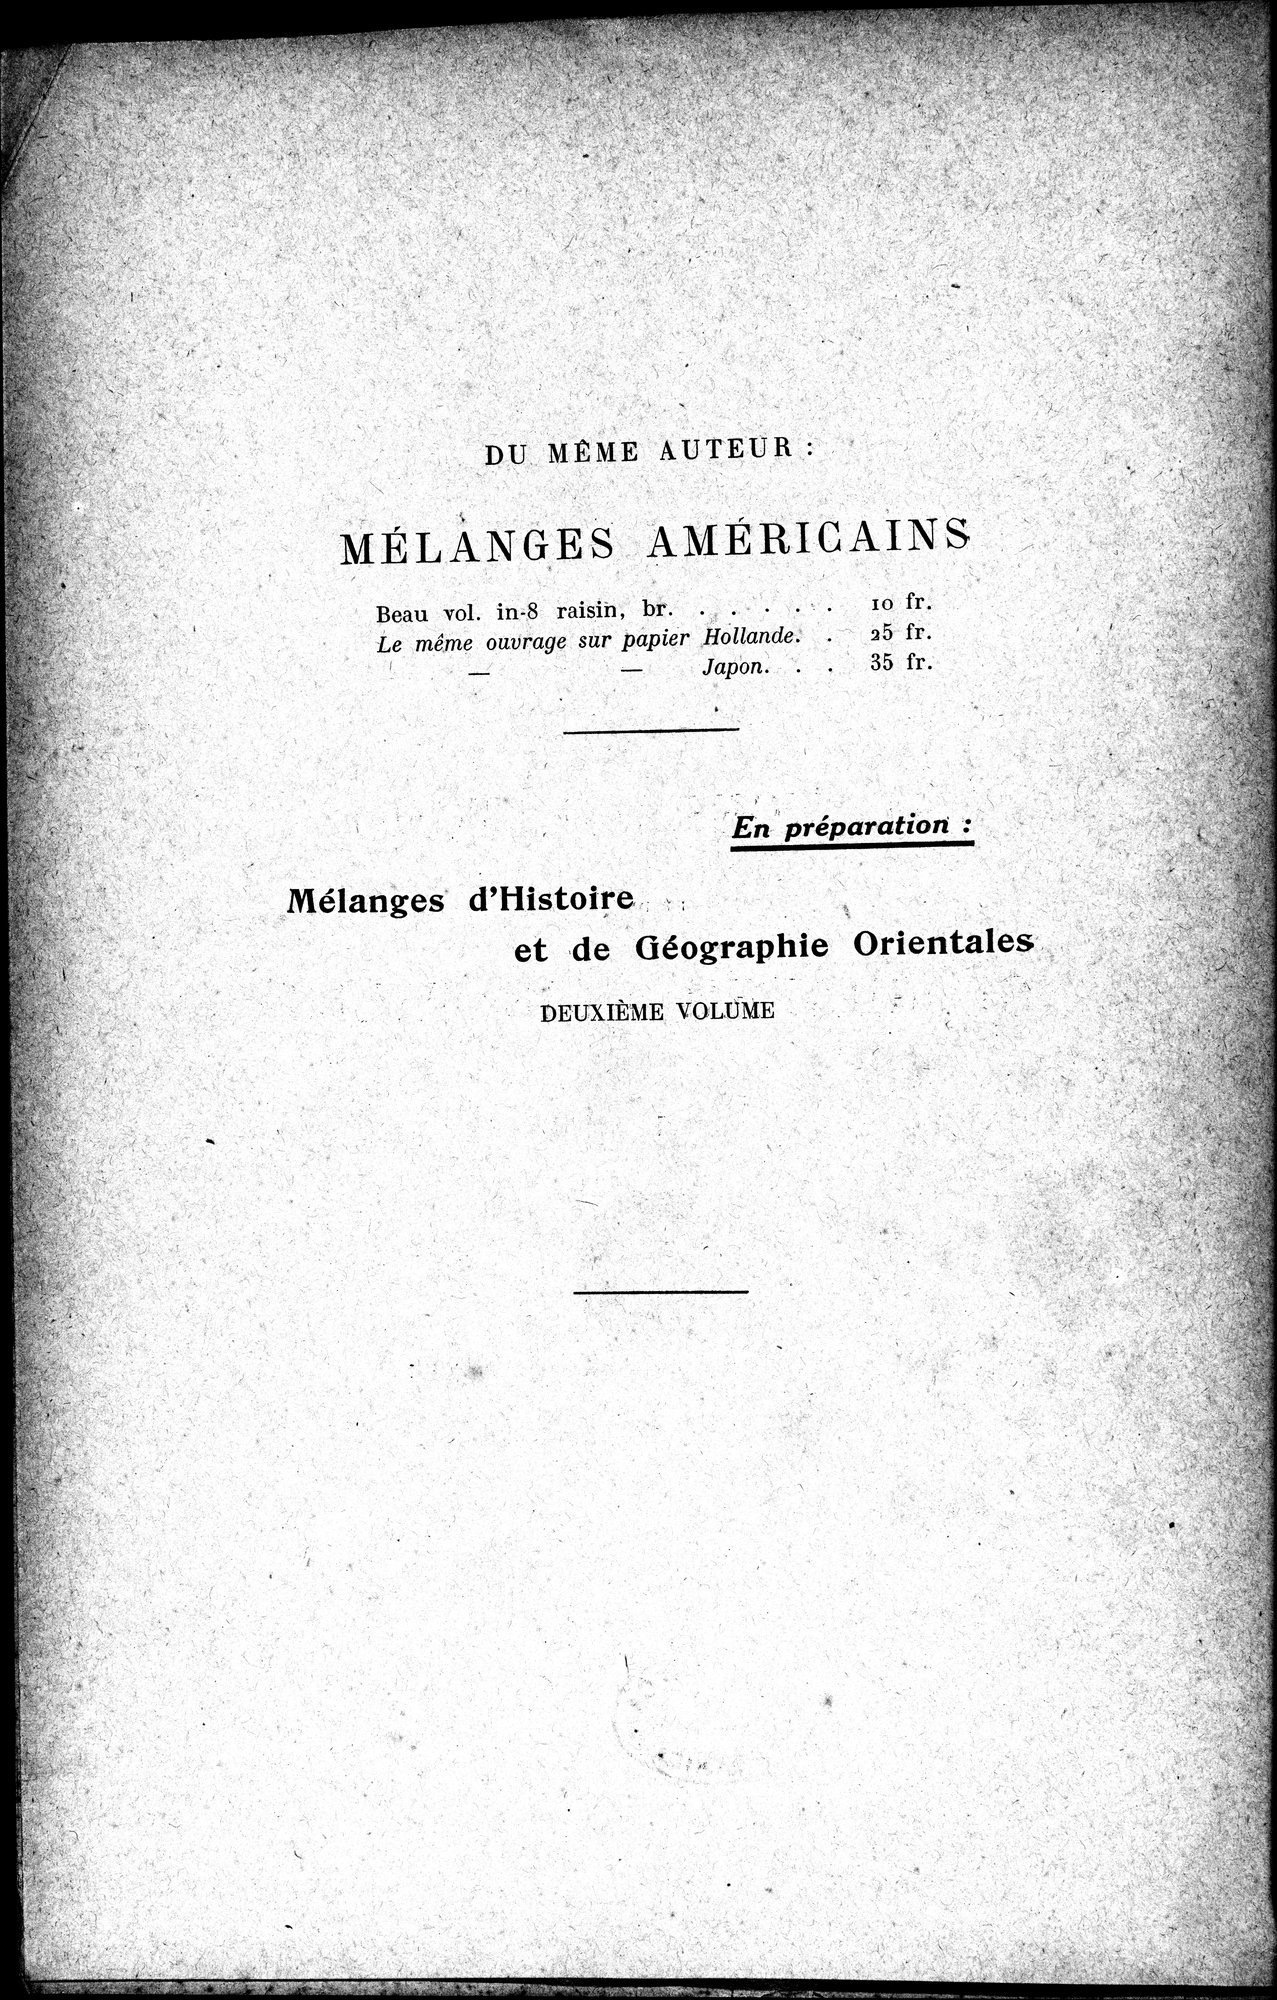 Mélanges d'Histoire et de Géographie Orientales : vol.1 / Page 6 (Grayscale High Resolution Image)